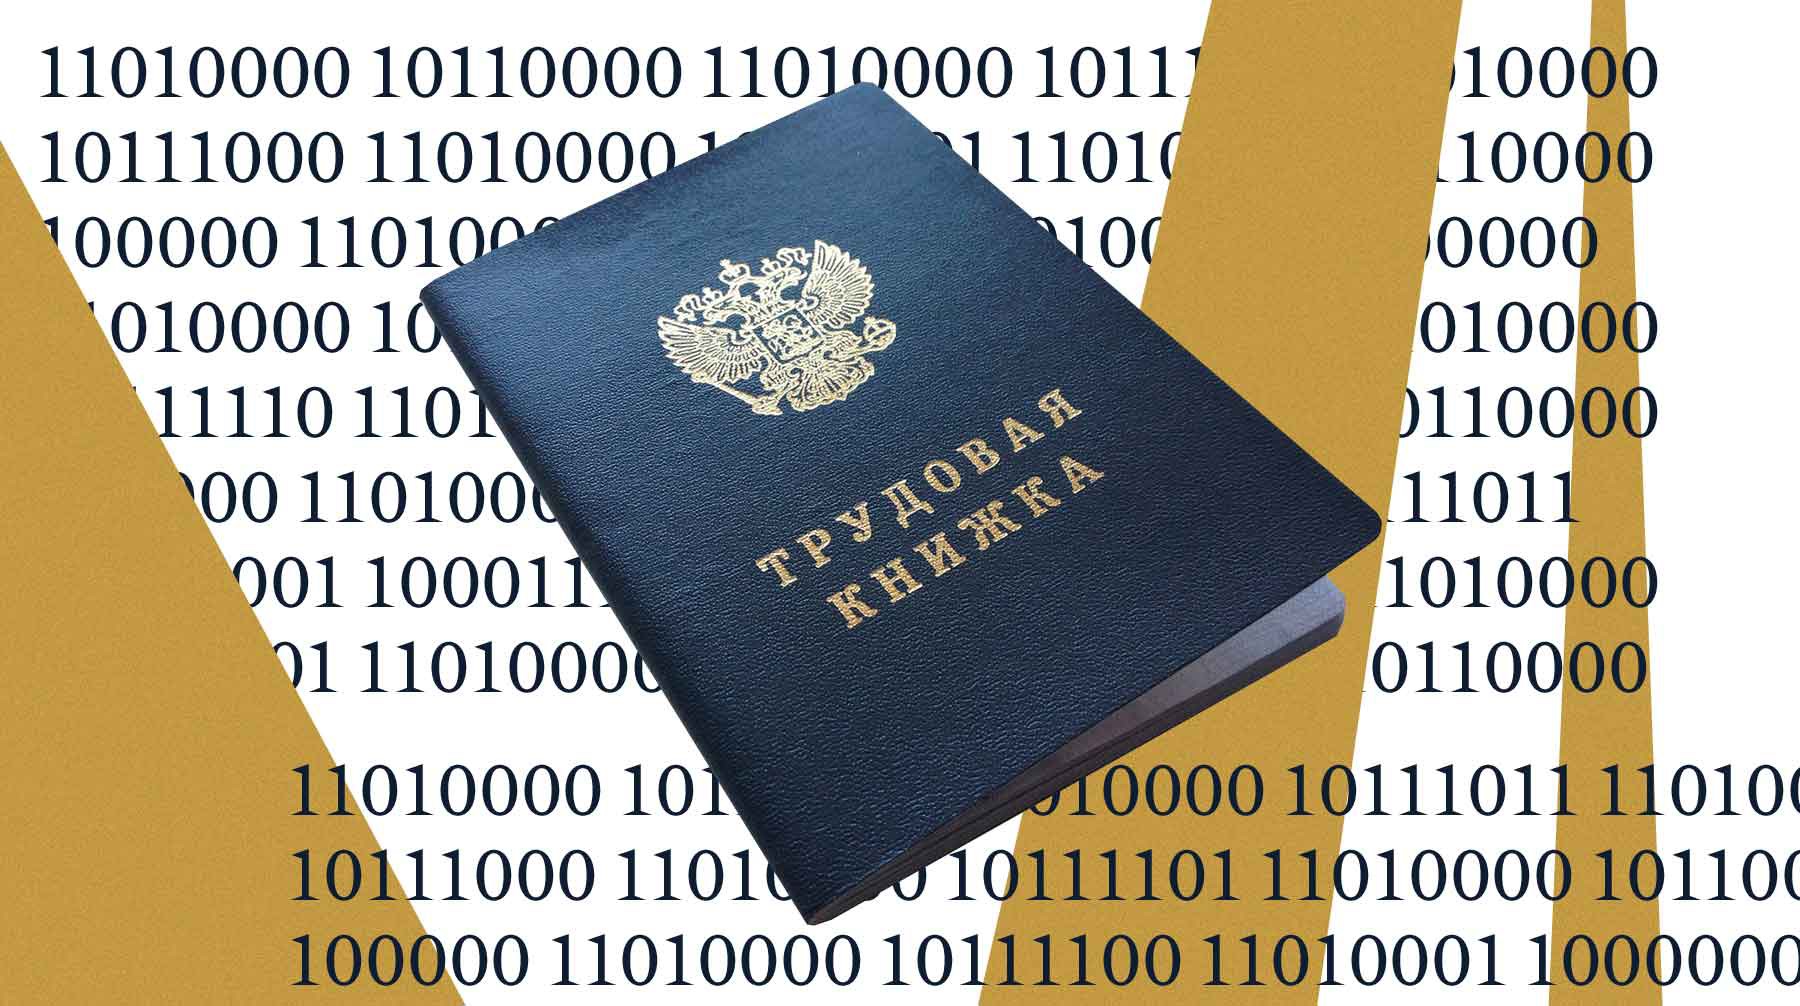 Dailystorm - Минтруд анонсировал введение электронных трудовых книжек. Какие еще бумажные документы россиян могут исчезнуть?